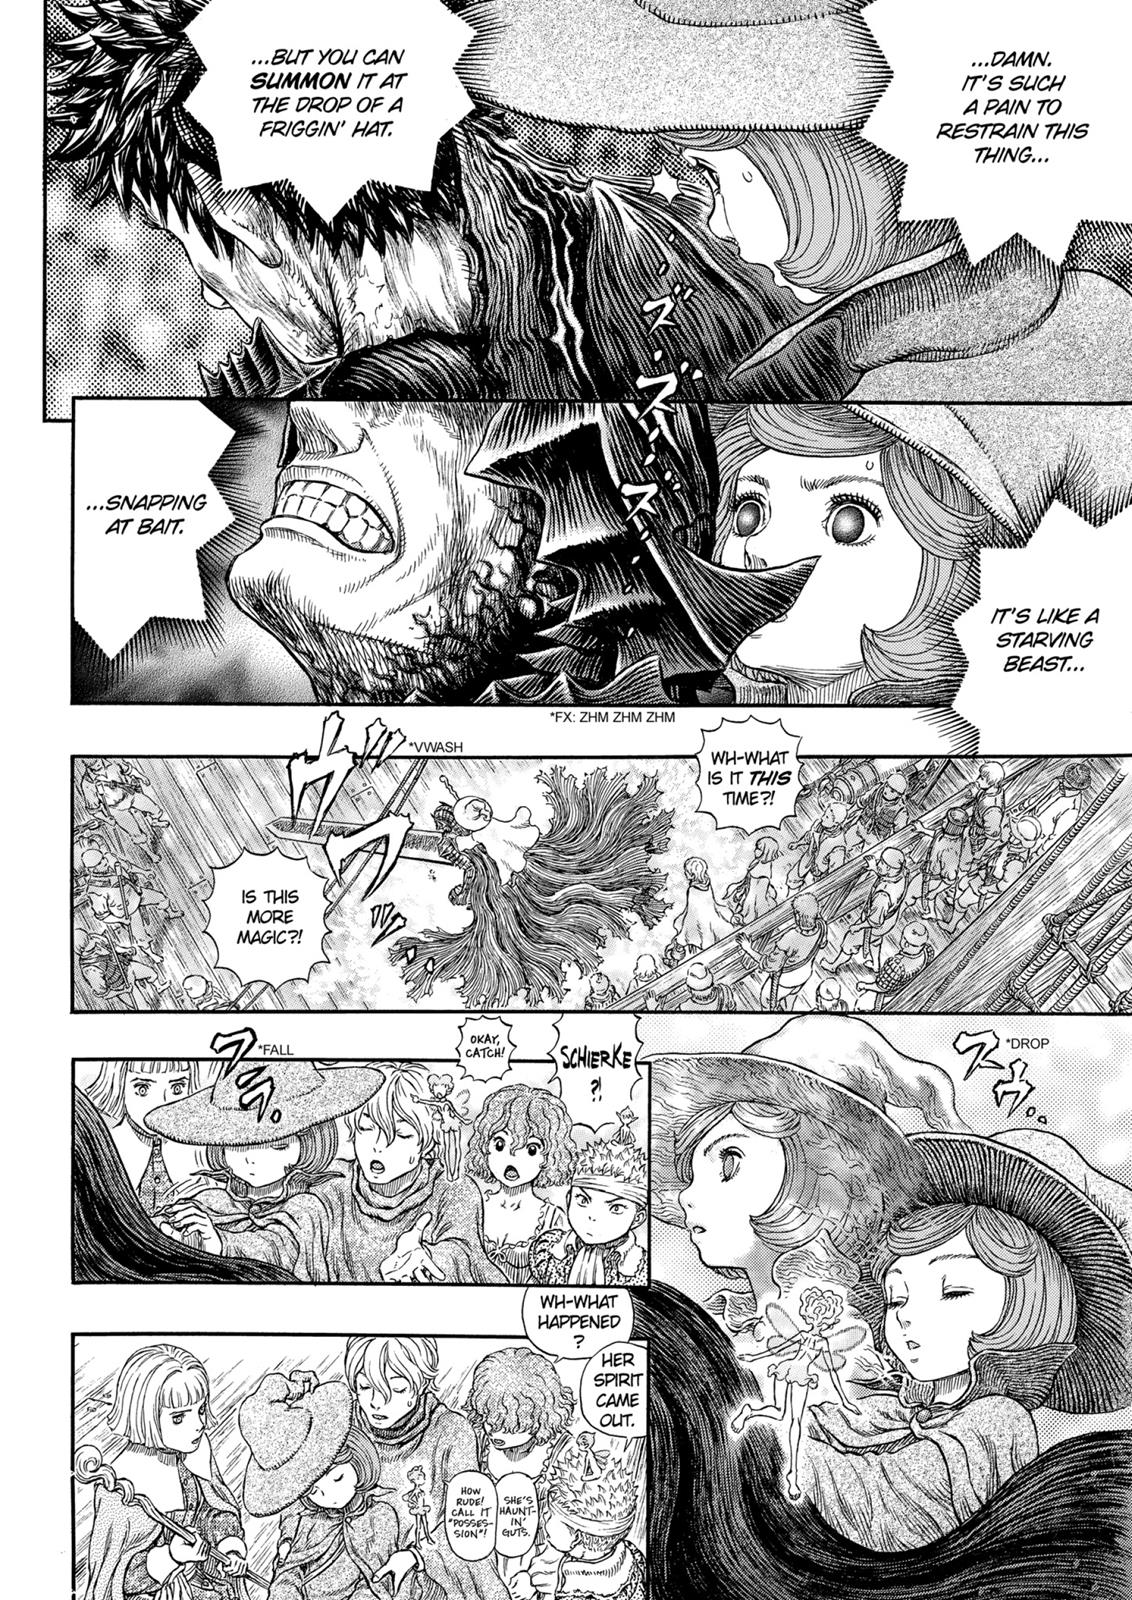 Berserk Manga Chapter 318 image 11